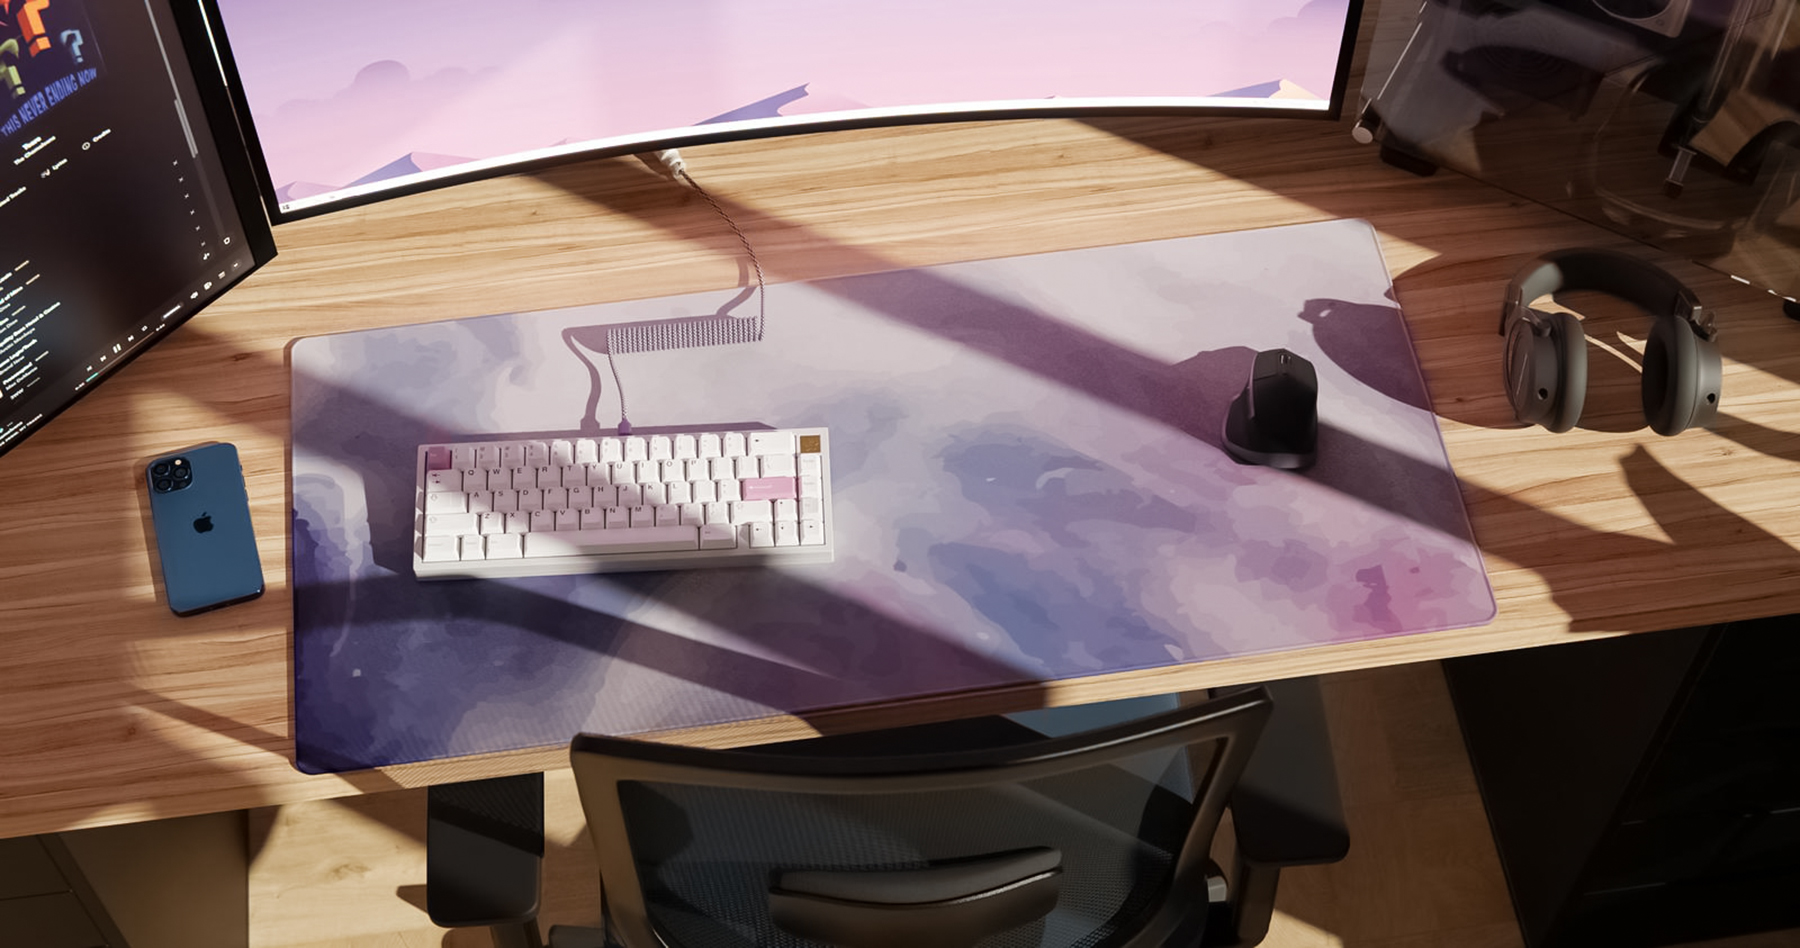 Mechanical Keyboard Desk Deskmat Keyboards 1800x948